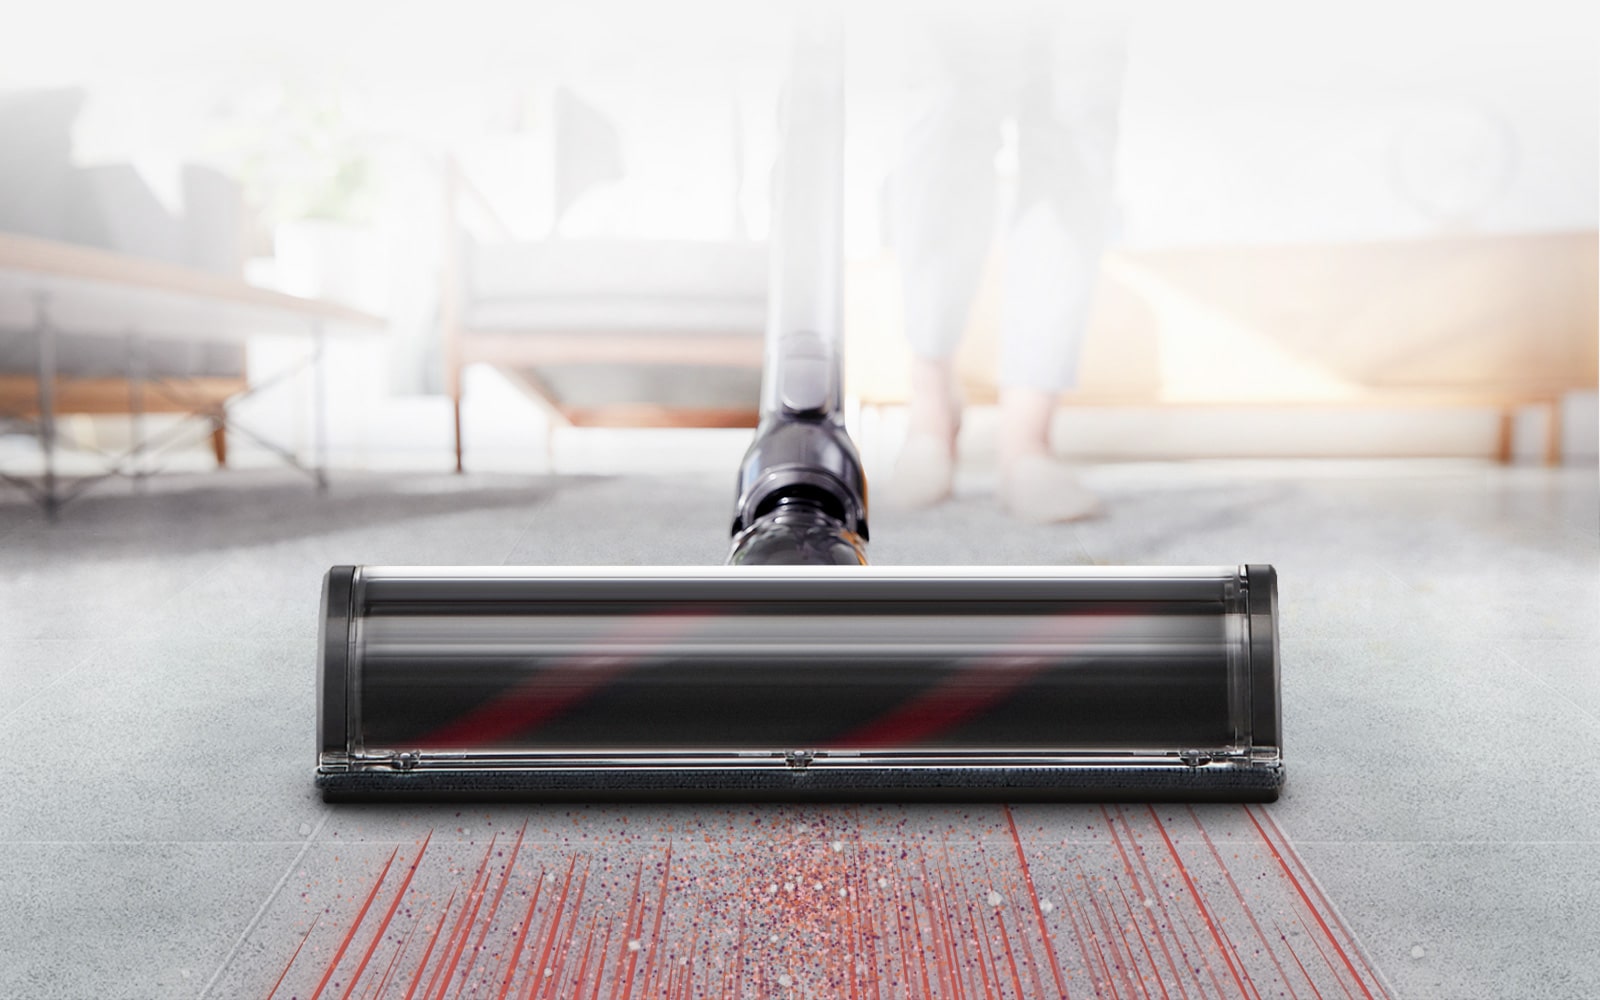 One vacuum cleaner – two motors